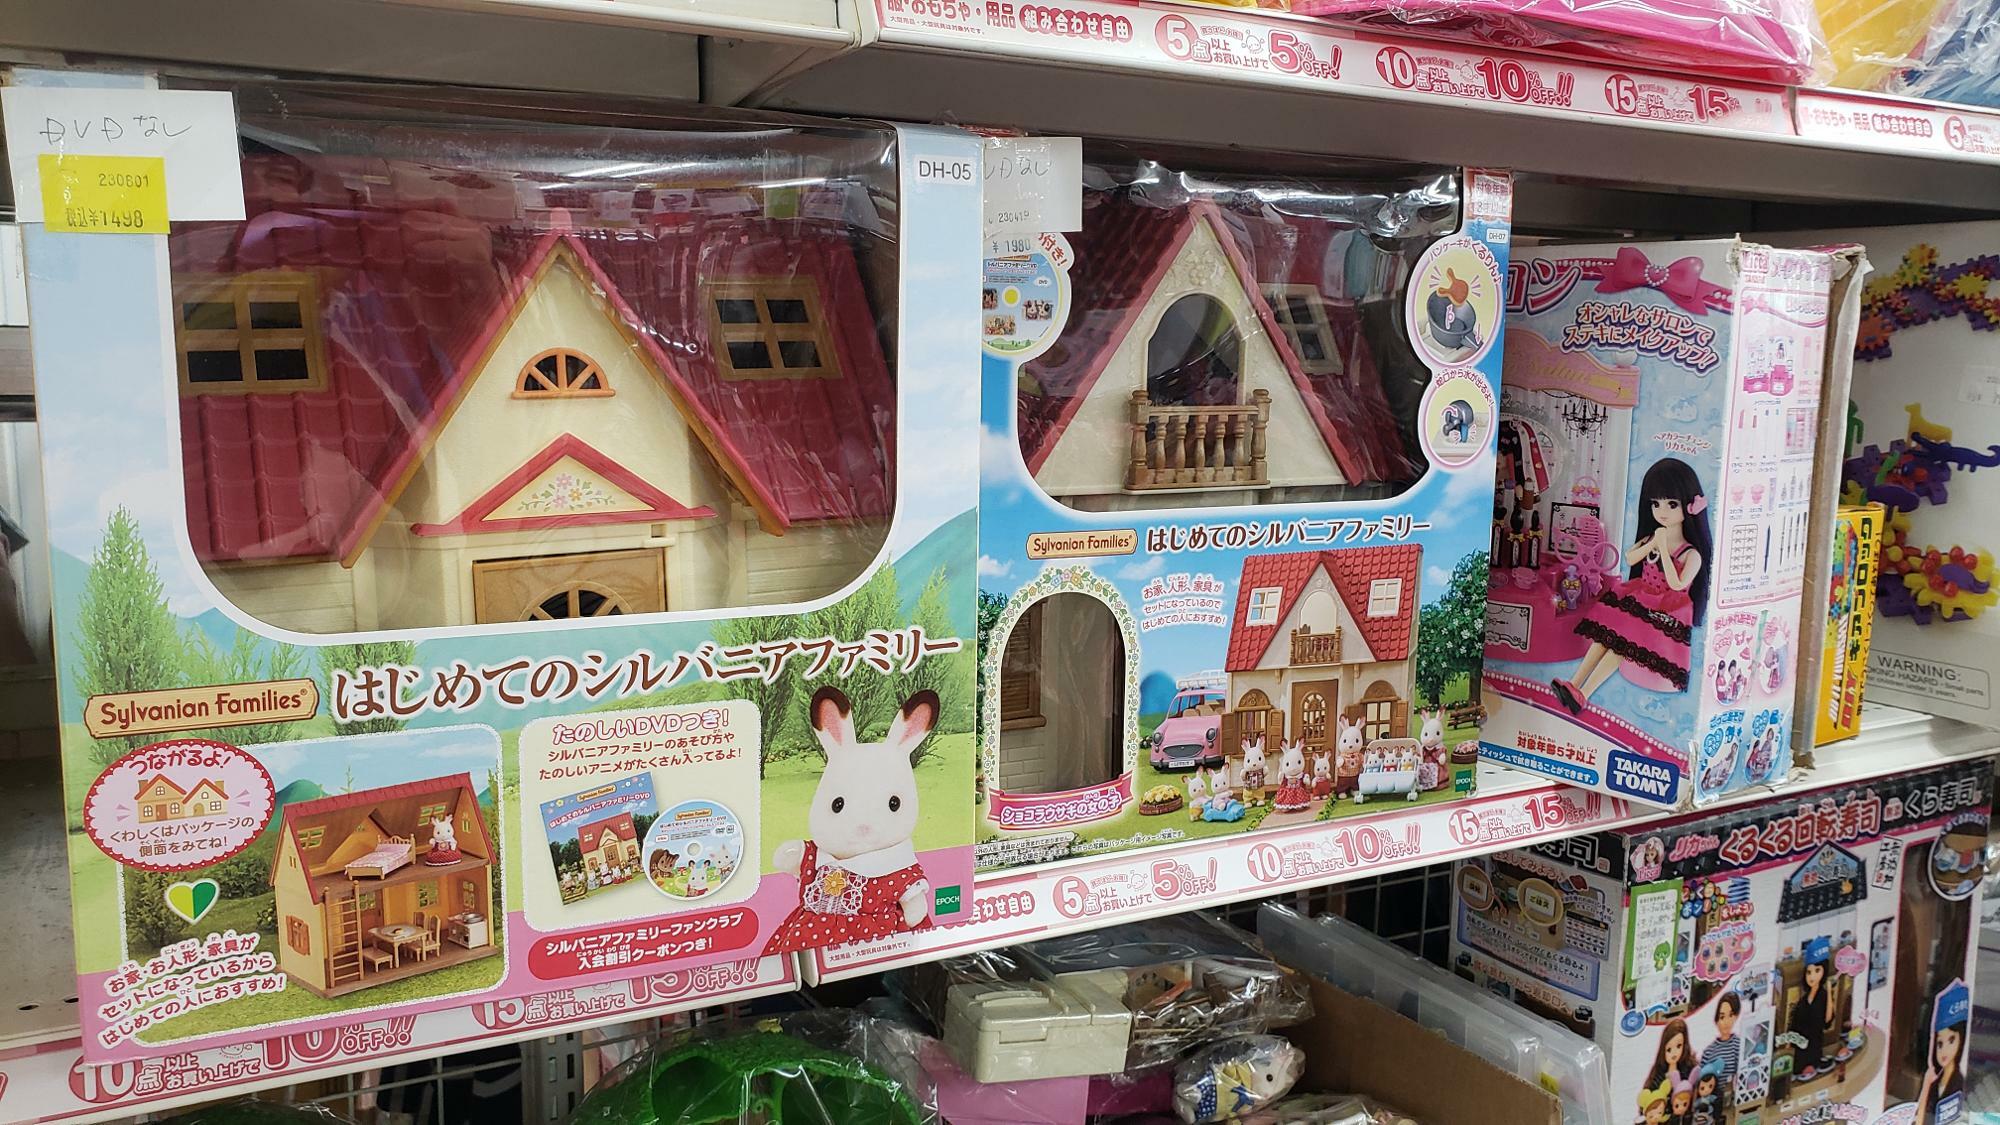 シルバニアは1500円で販売されていました。そしてきっずえんじぇるのおもちゃは状態が良いものが多い印象があります。